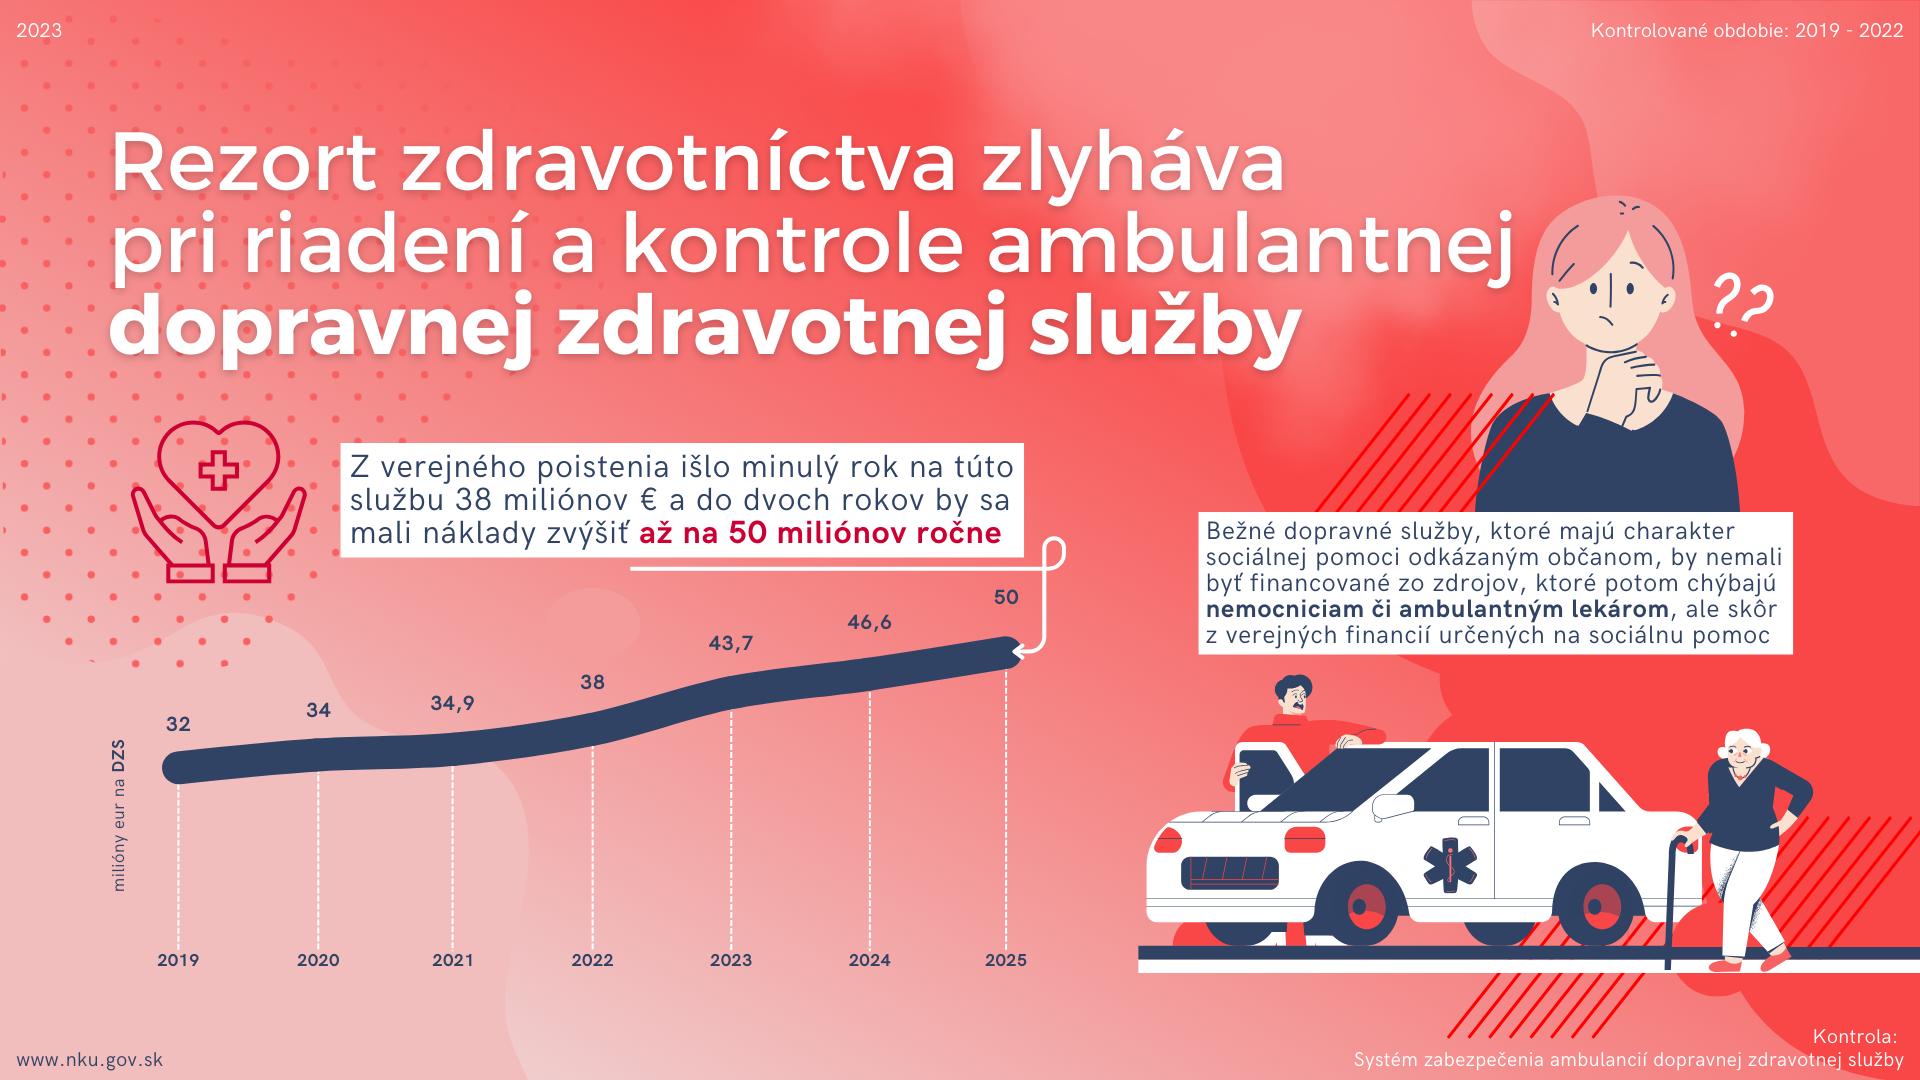 Infografika Kontrola: Systém zabezpečenia ambulancií dopravnej zdravotnej služby  Kontrolované obdobie: 2019 - 2022   Rezort zdravotníctva zlyháva pri riadení a kontrole ambulantnej dopravnej zdravotnej služby  Z verejného poistenia išlo minulý rok na túto službu 38 miliónov € a do dvoch rokov by sa mali náklady zvýšiť až na 50 miliónov ročne;   Bežné dopravné služby, ktoré majú charakter sociálnej pomoci odkázaným občanom, by nemali byť financované zo zdrojov, ktoré potom chýbajú nemocniciam či ambulantným lekárom, ale skôr z verejných financií určených na sociálnu pomoc;